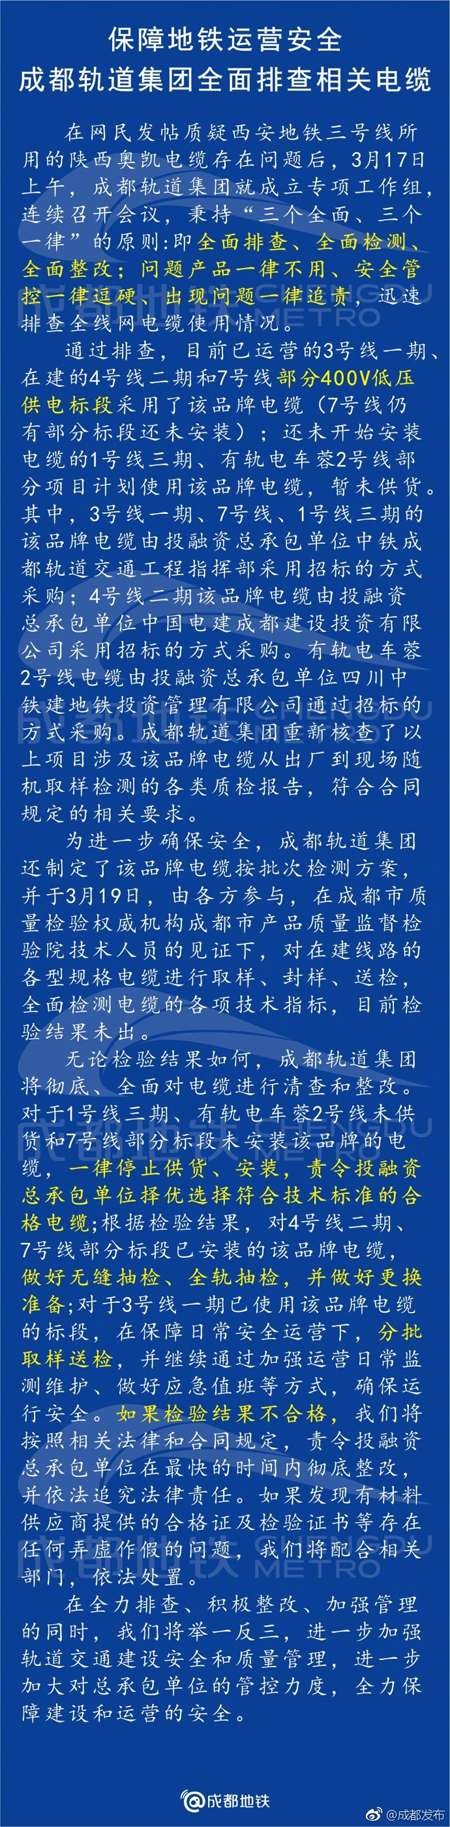 原标题:成都轨道集团承认使用“陕西地铁问题电缆”